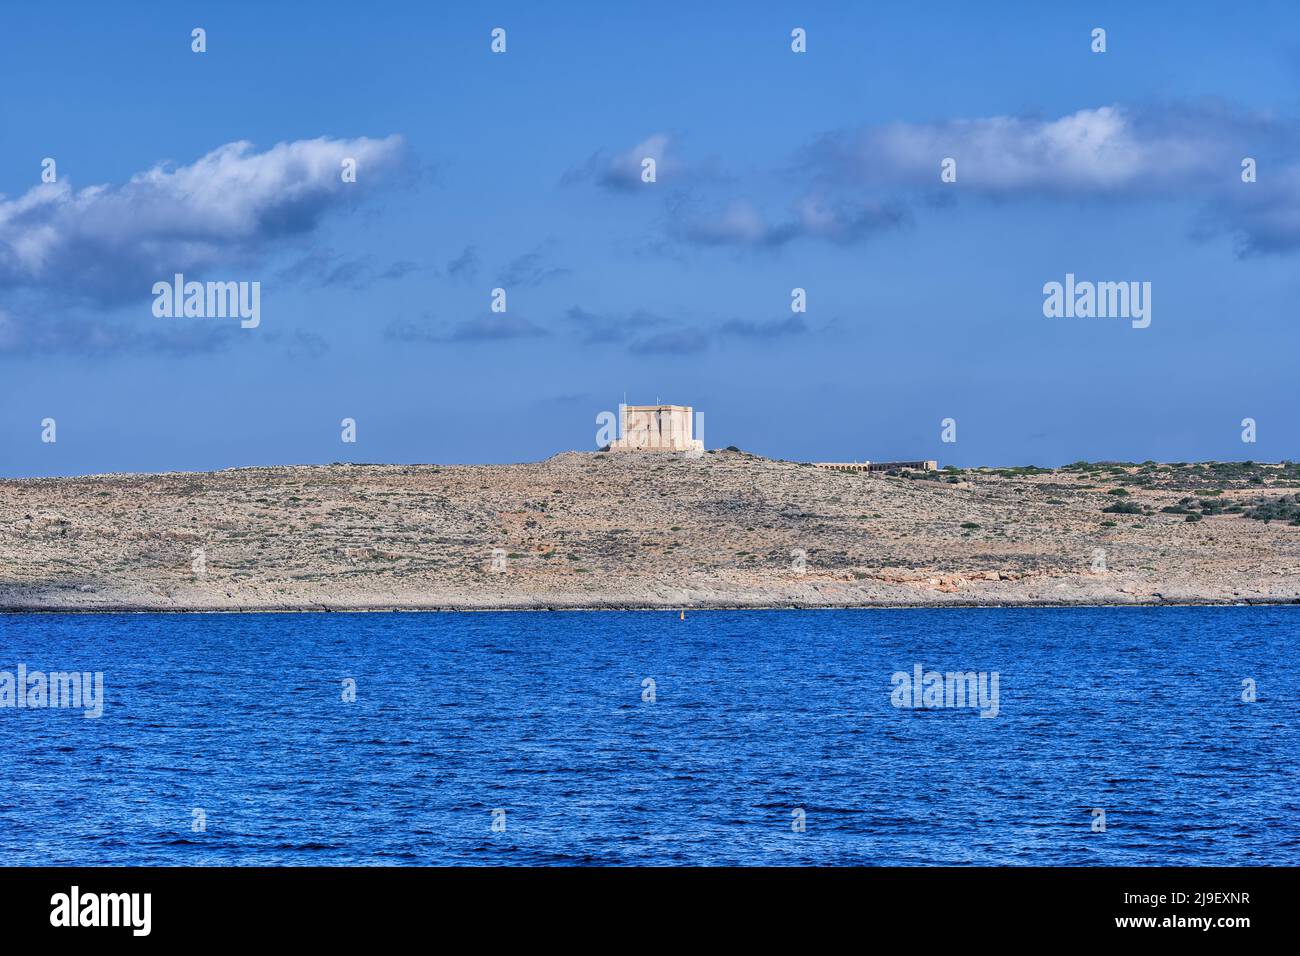 Isola Comino dell'arcipelago maltese tra le isole di Malta e Gozo nel Mediterraneo, Torre Santa Maria in lontananza. Foto Stock